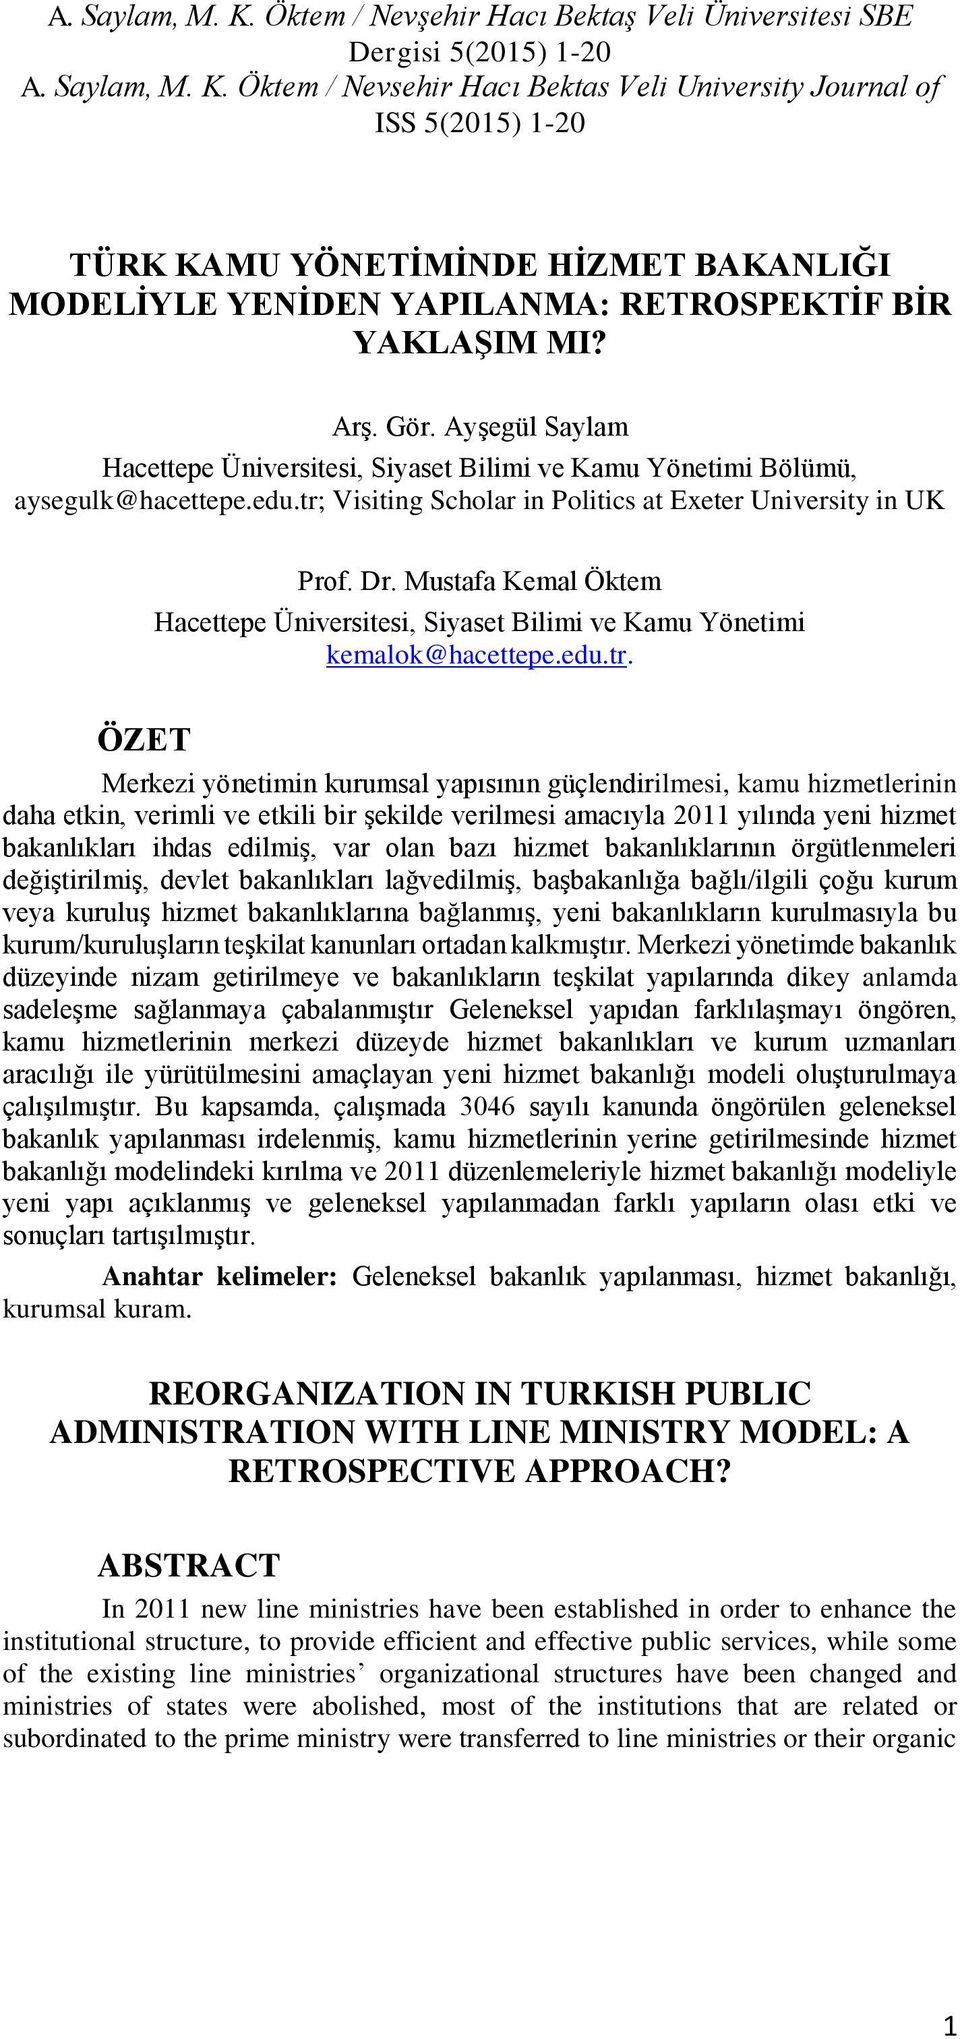 Mustafa Kemal Öktem Hacettepe Üniversitesi, Siyaset Bilimi ve Kamu Yönetimi kemalok@hacettepe.edu.tr.